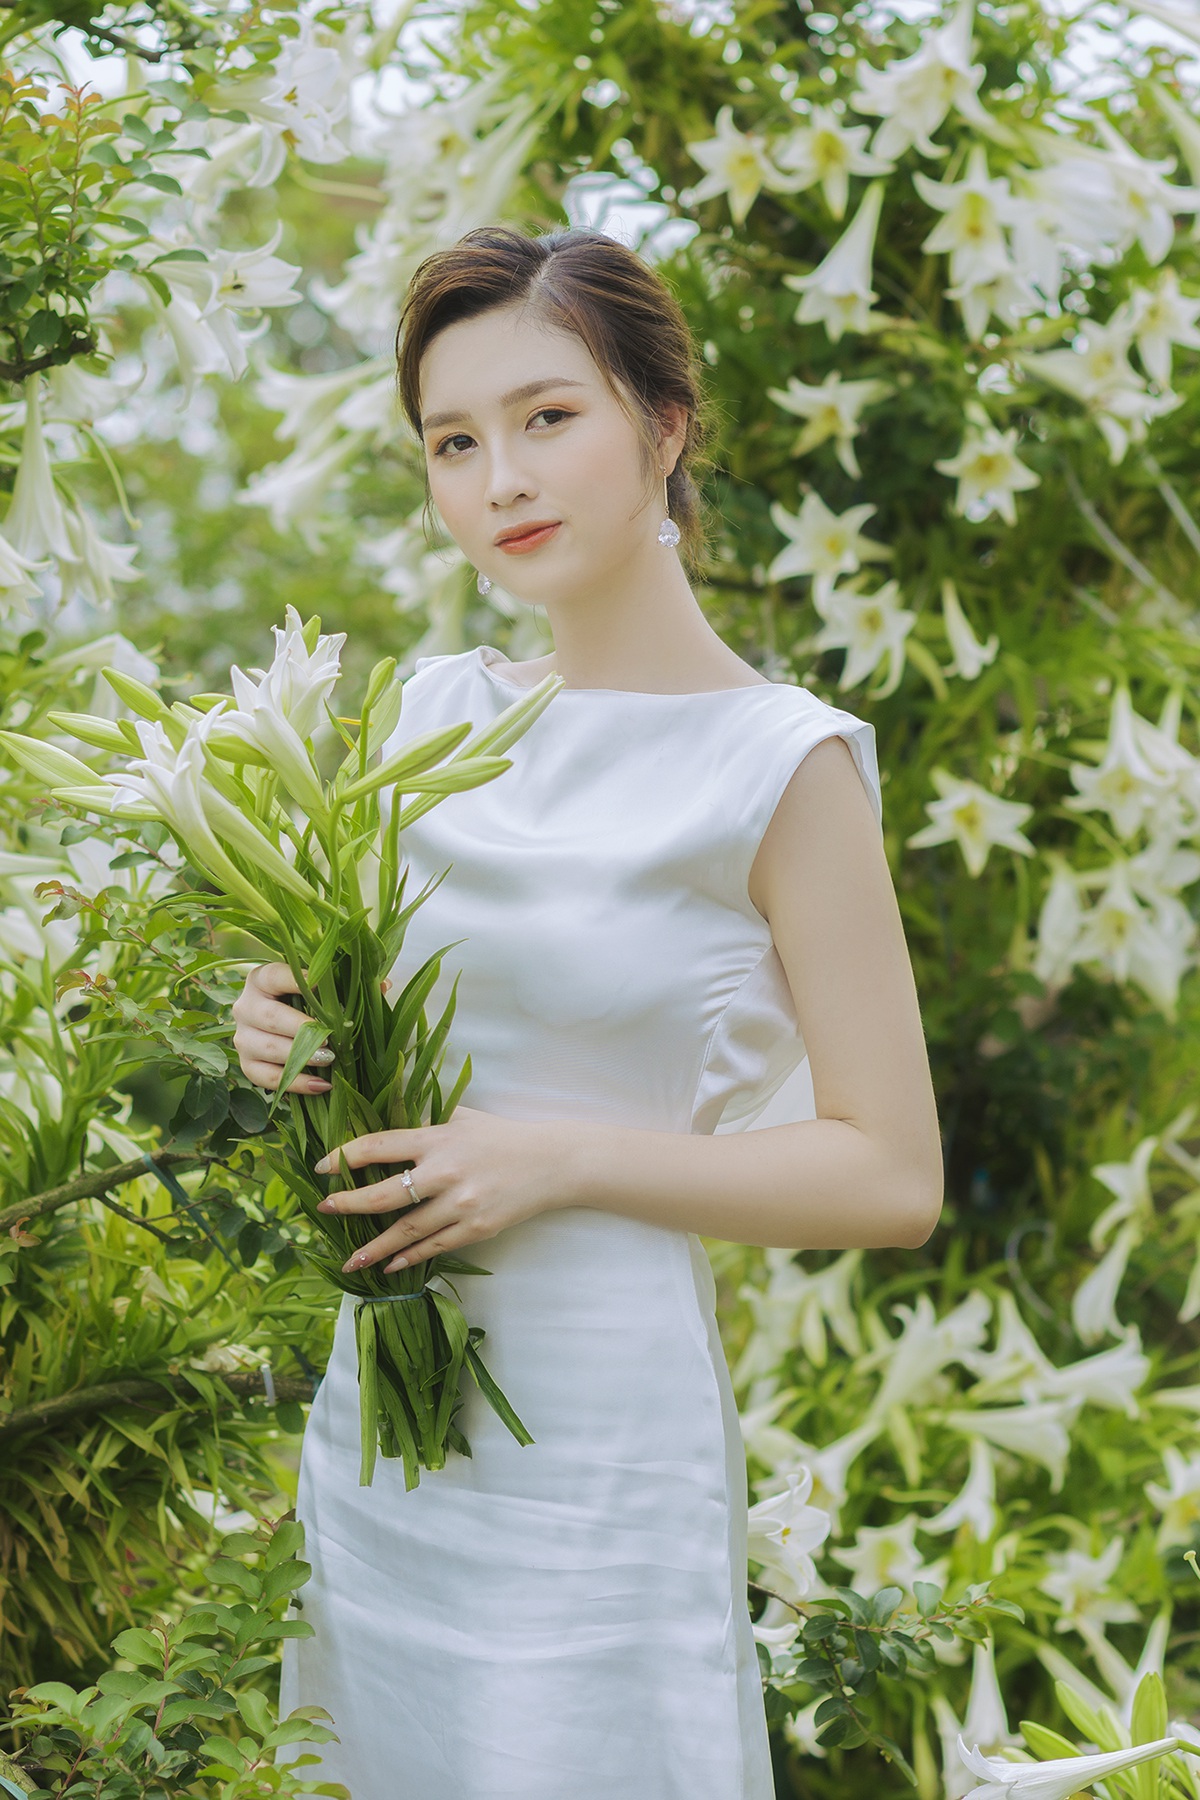 Hoa khôi đh quốc gia hà nội khoe lưng trắng ngần giữa vườn loa kèn mùa hạ - 9